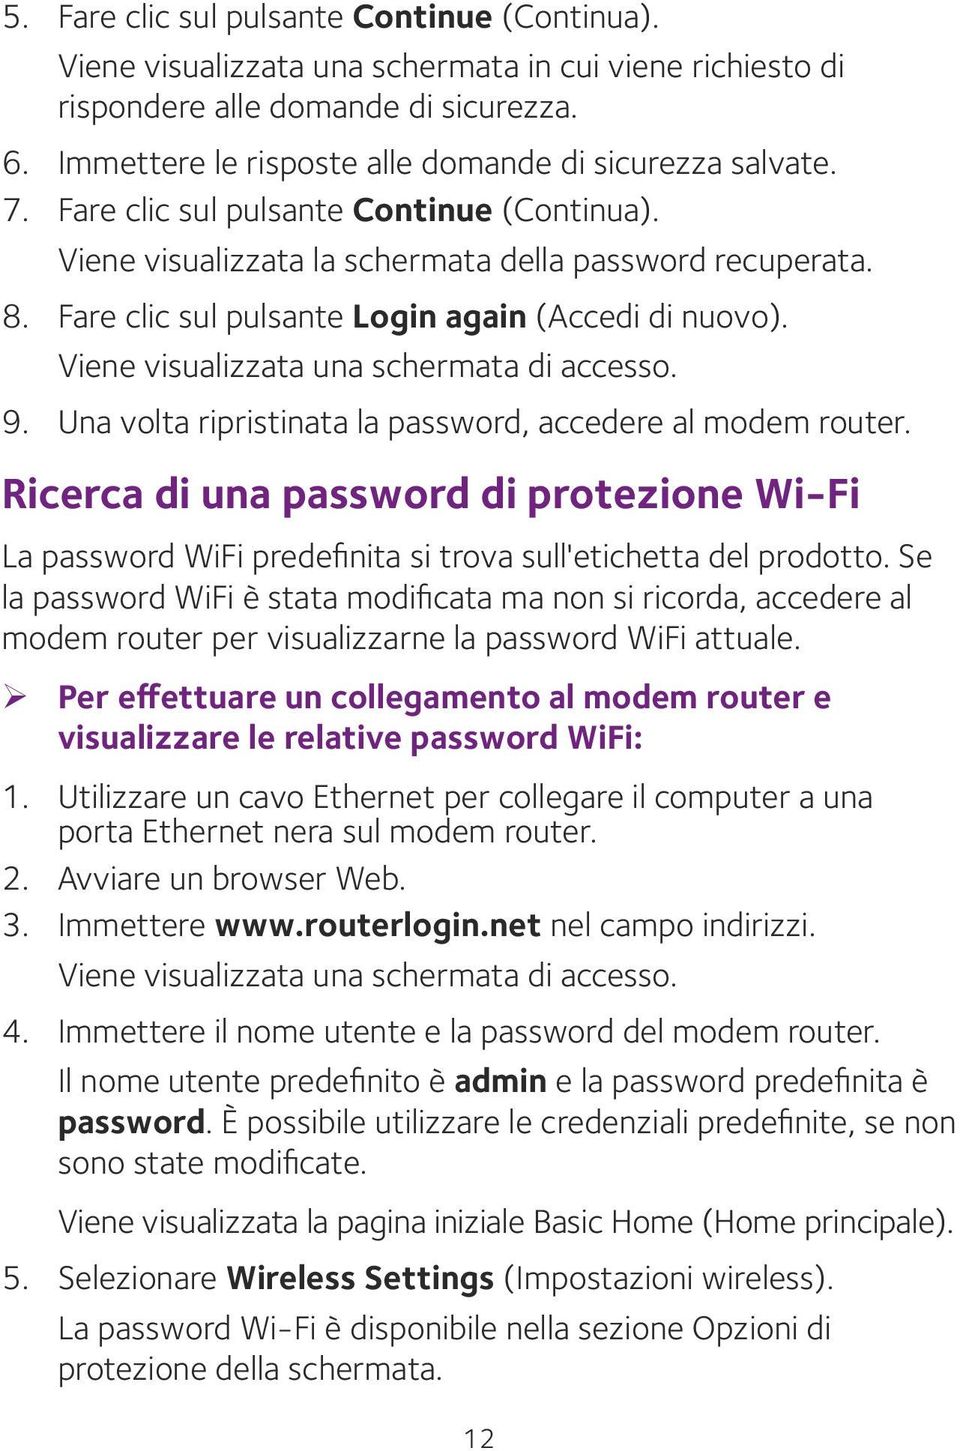 Fare clic sul pulsante Login again (Accedi di nuovo). Viene visualizzata una schermata di accesso. 9. Una volta ripristinata la password, accedere al modem router.